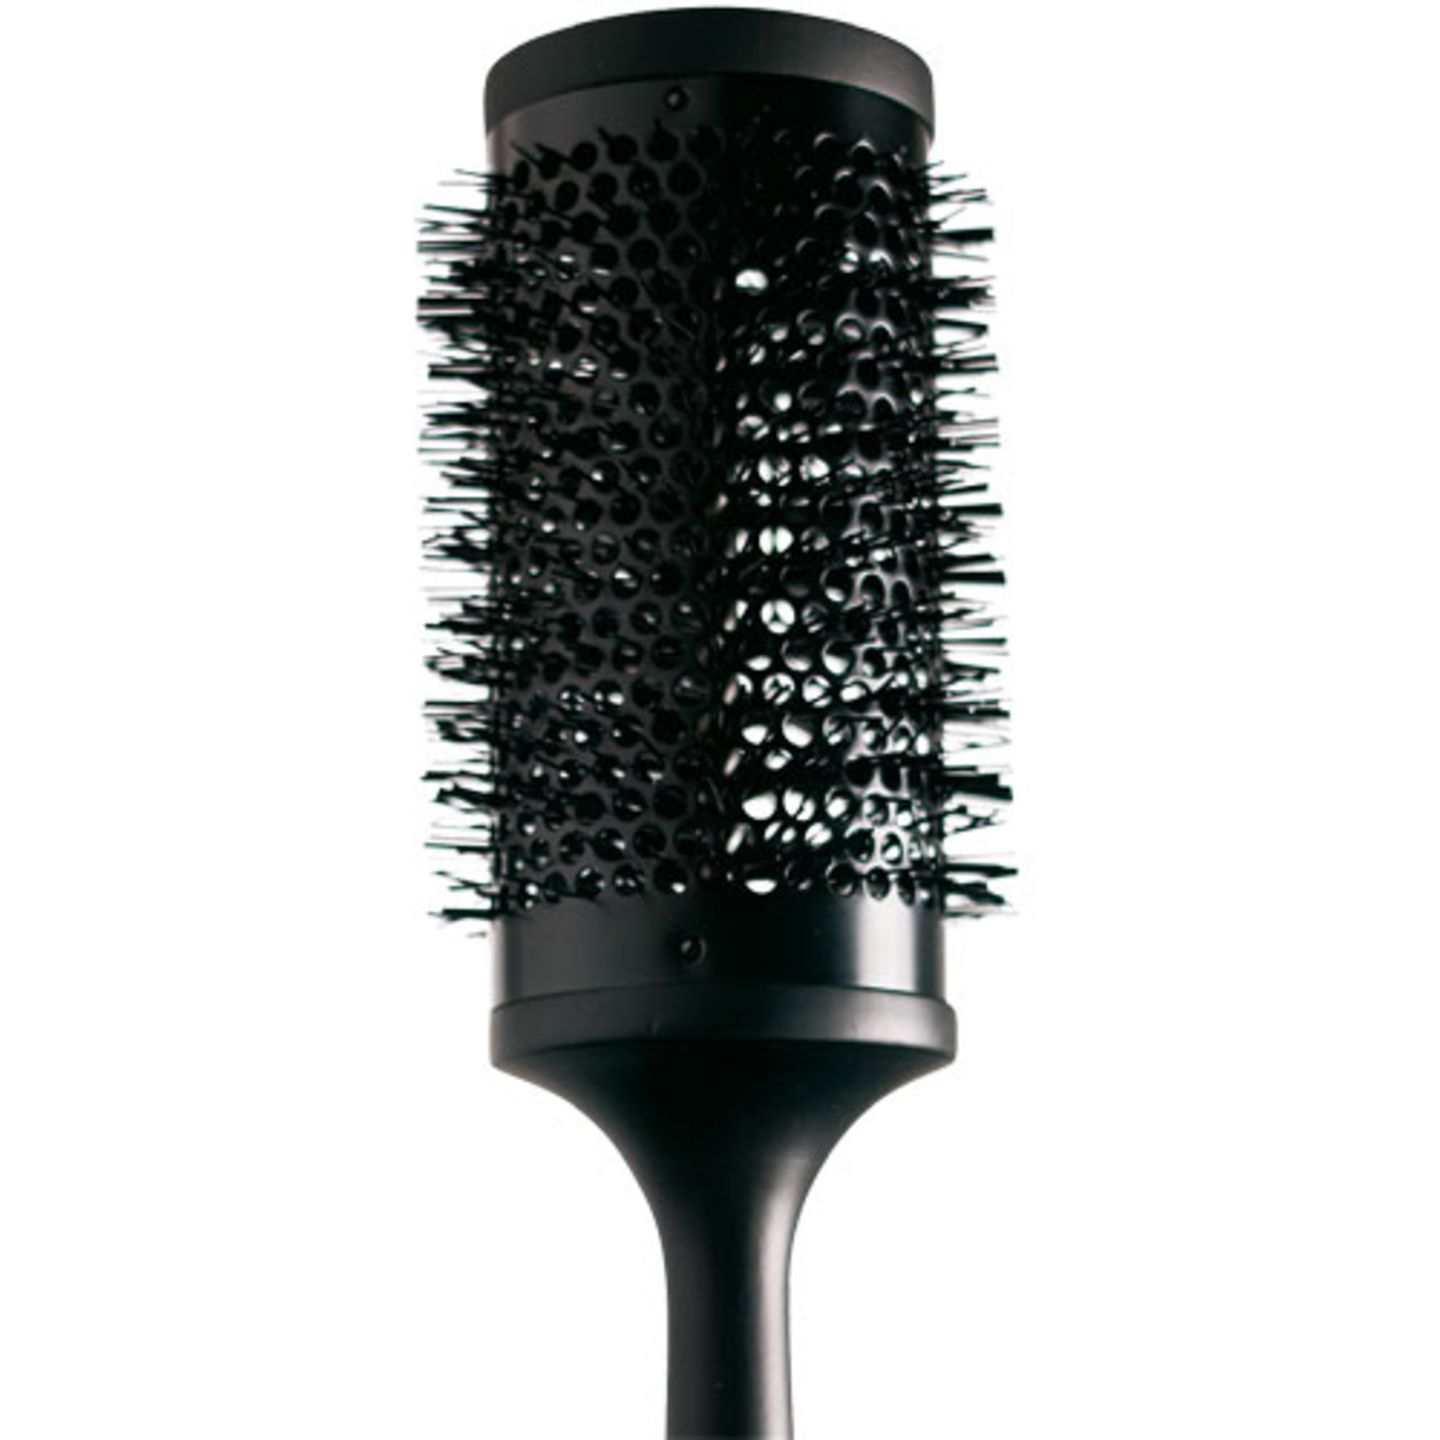 Mit der Rundbürste "Ceramic Vented Radial Brush" lässt sich prima Fülle am Ansatz kreieren oder krause Haarstruktur beim Trocknen glatt ziehen. Von ghd, ca. 26 Euro. Über www.gdh.de